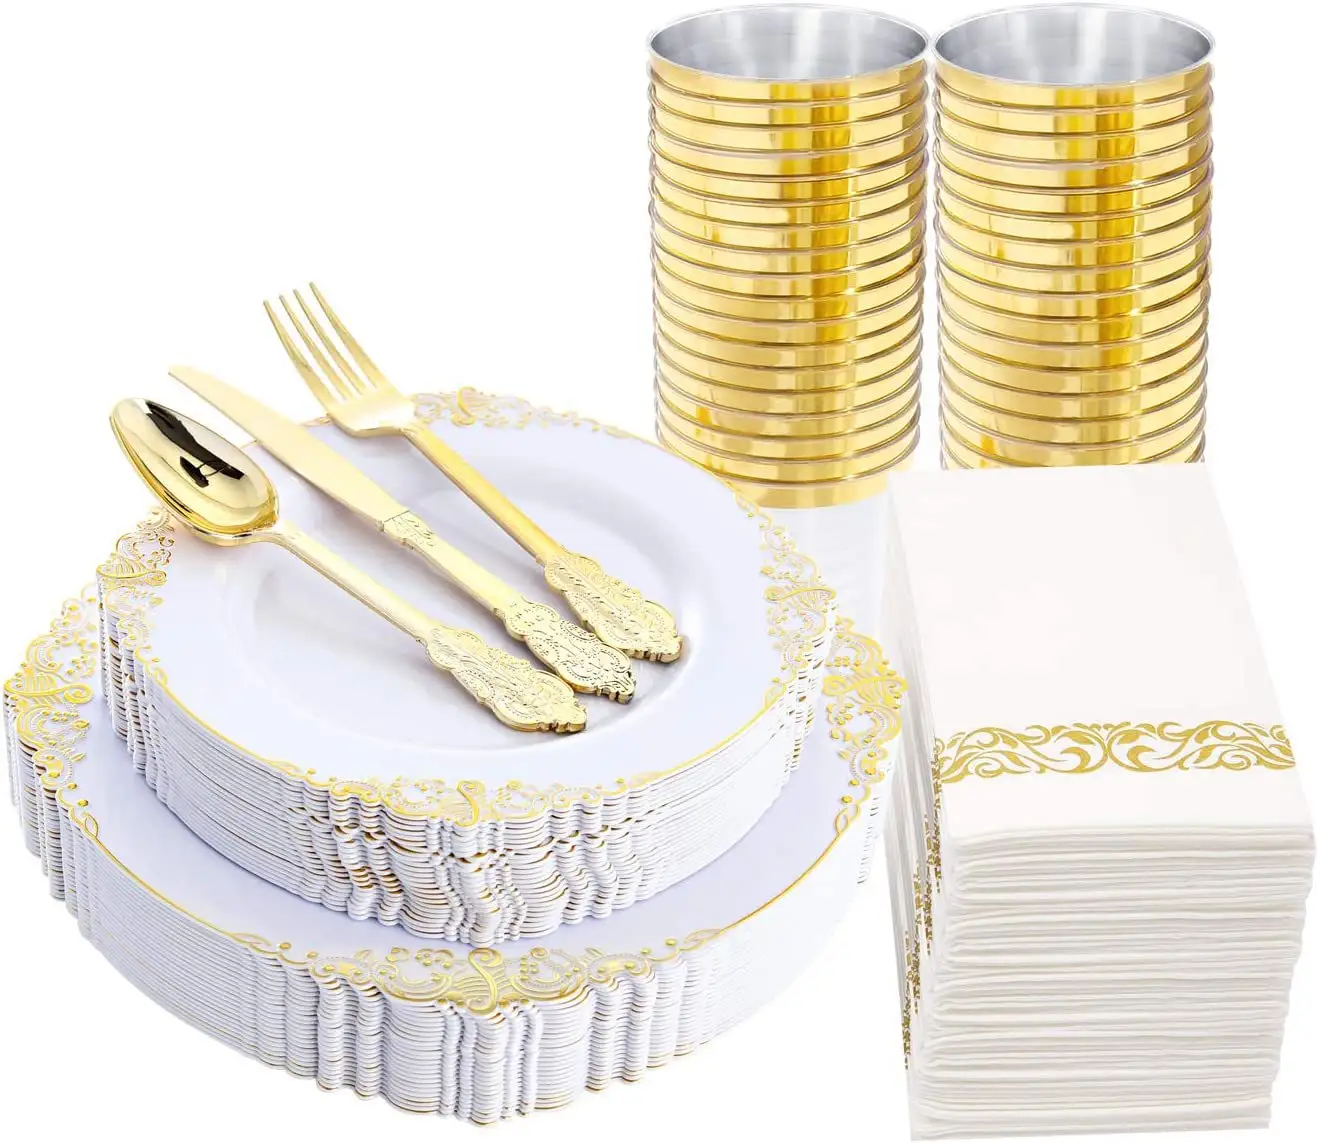 Оптовая продажа, набор 300 тарелок из 175 предметов, одноразовые принадлежности для вечеринок, посуда и тарелки с золотым ободом, кружевная посуда для банкетов